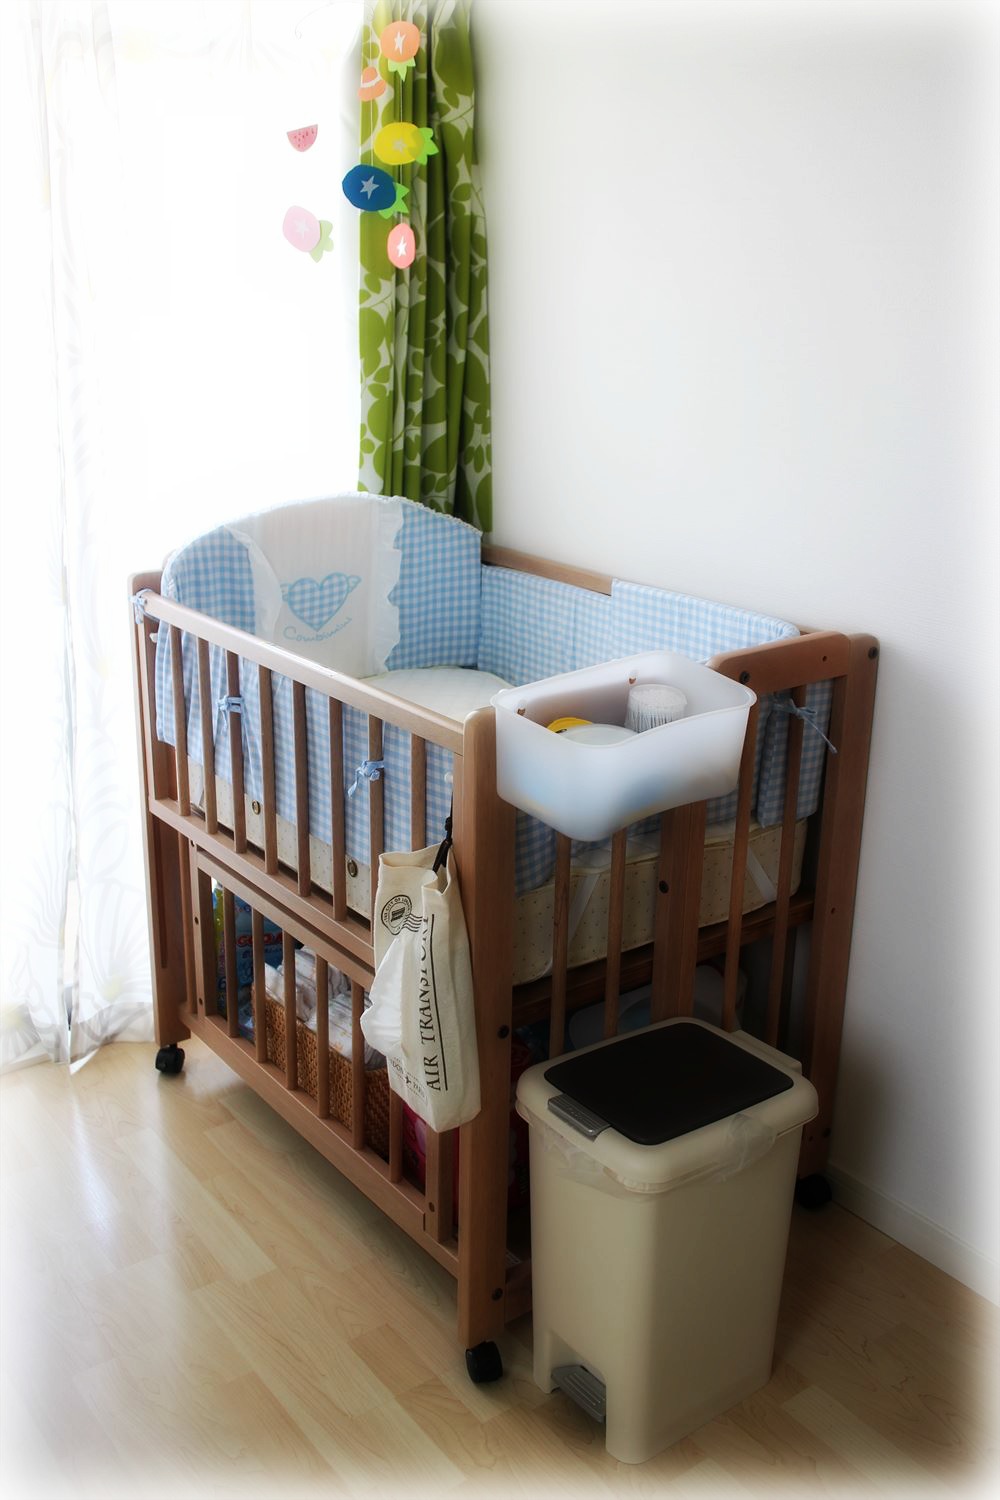 販売日本 ベビー☺️ベビーベッド☺️赤ちゃんの寝具❤ベット❤使いやすい✨収納便利❤ 布団/毛布